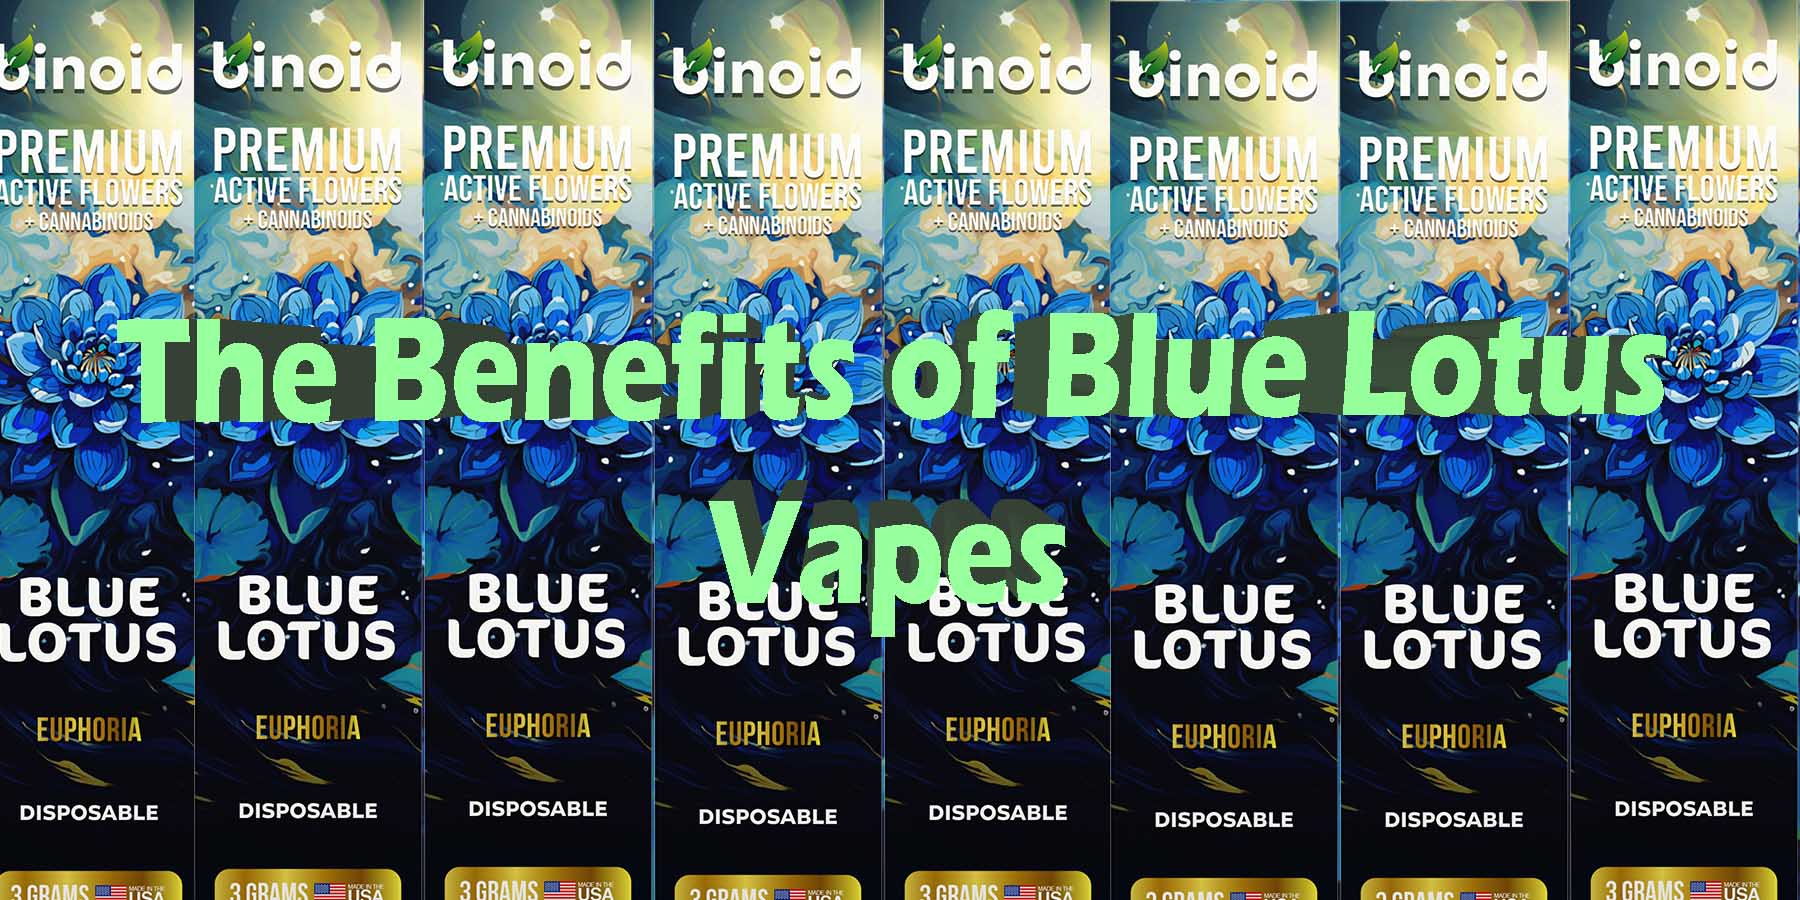 The Benefits of Blue Lotus Vapes Active Flowers Blue Hemp Cannabinoids WhereToBuy HowToBuy Strongest GoodHigh New Mushrooms GoodPrice Bounce Binoid